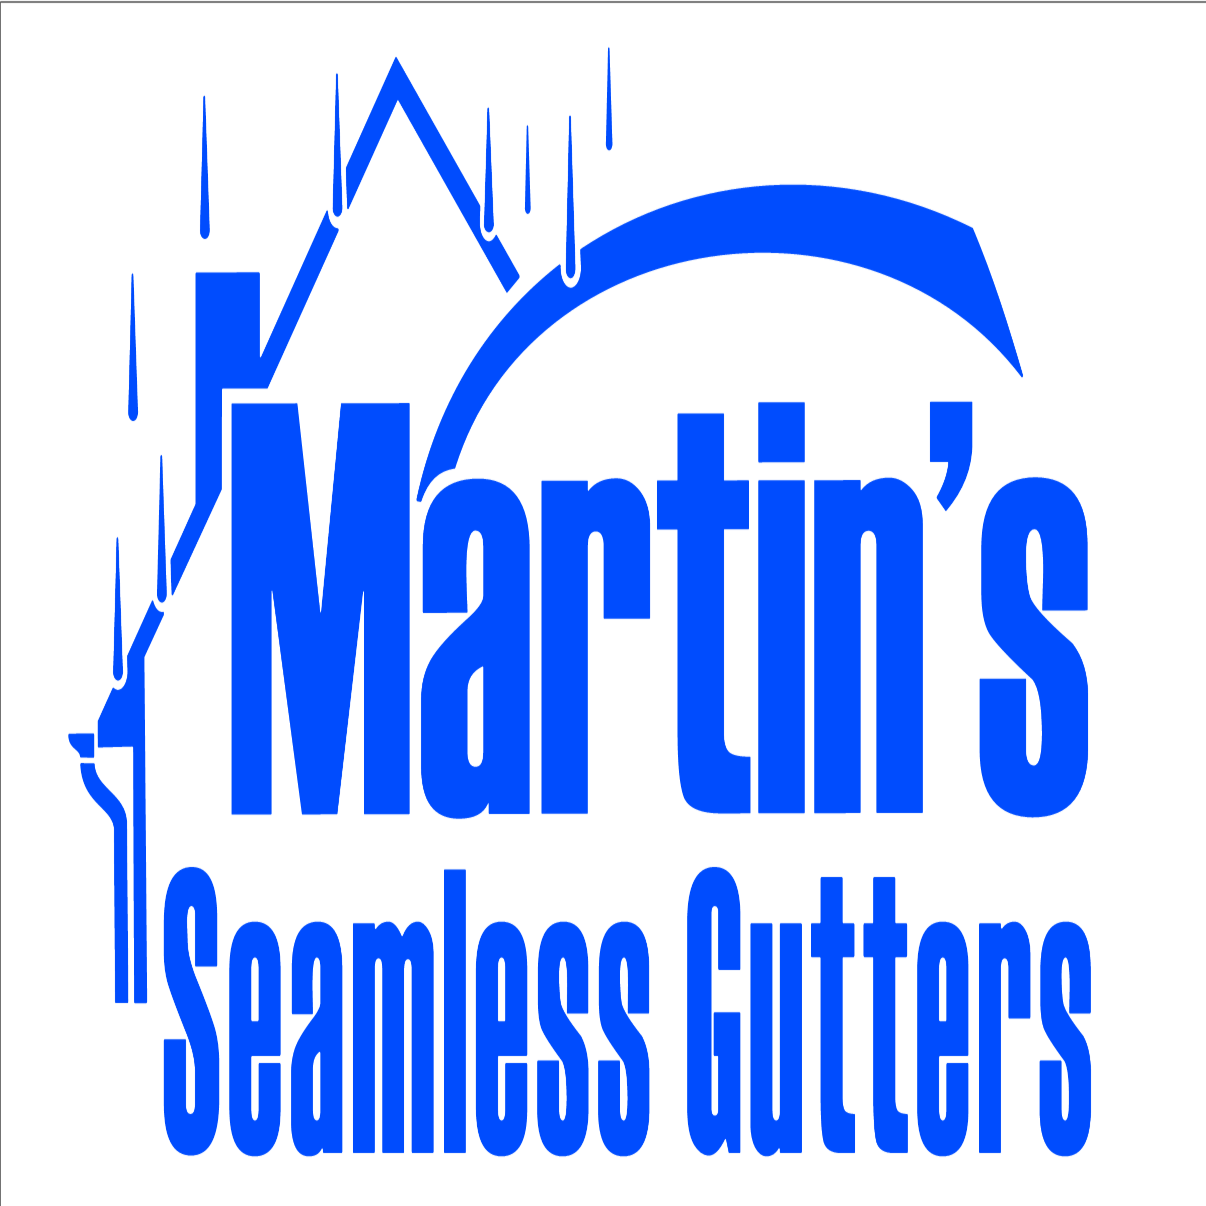 Martin's Seamless Gutters